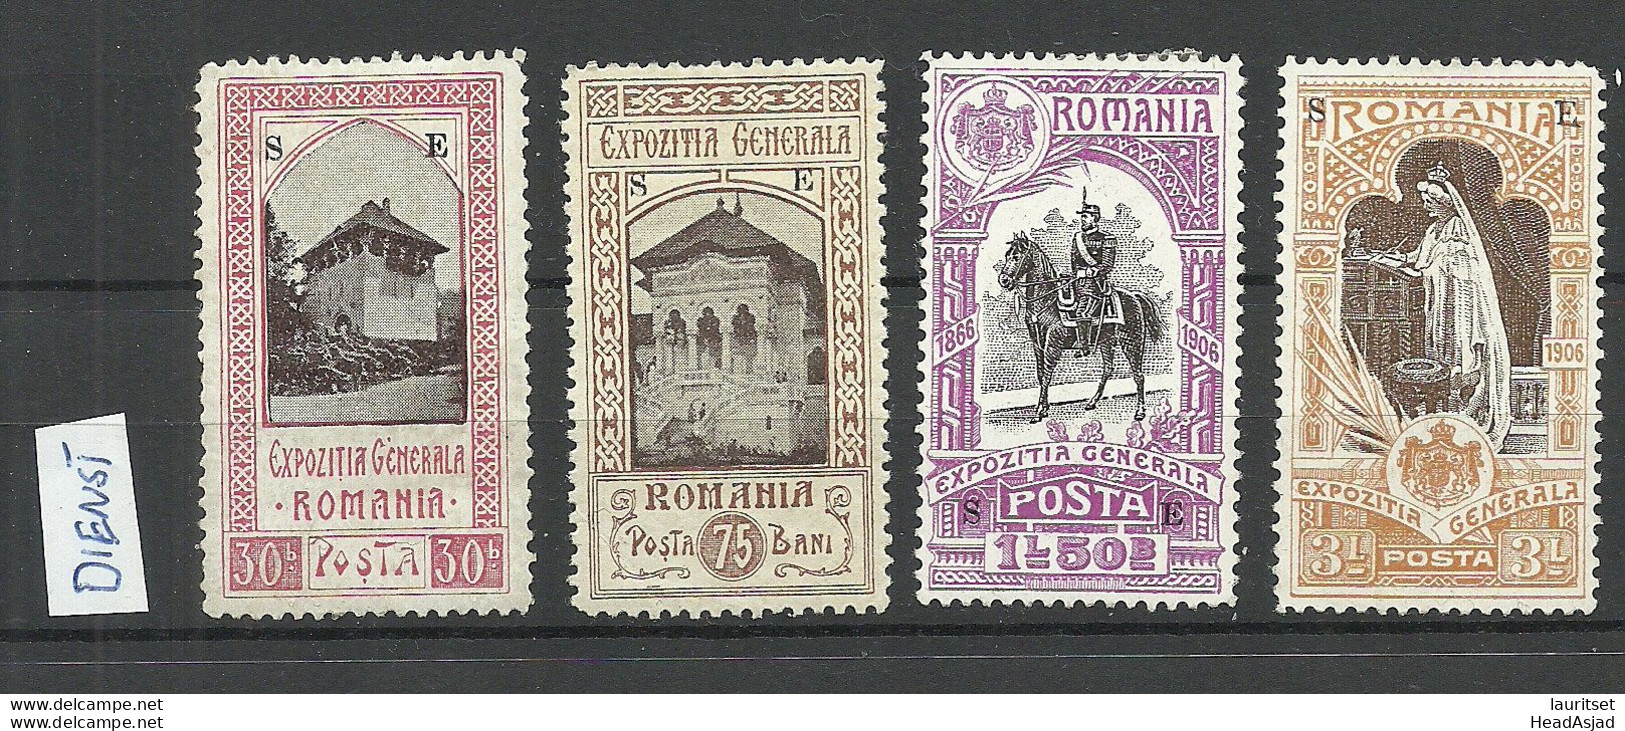 ROMANIA Rumänien 1906 - 4 Dienstmarke EXPOZITIA GENERALA With OPT "SE" * - Dienstzegels